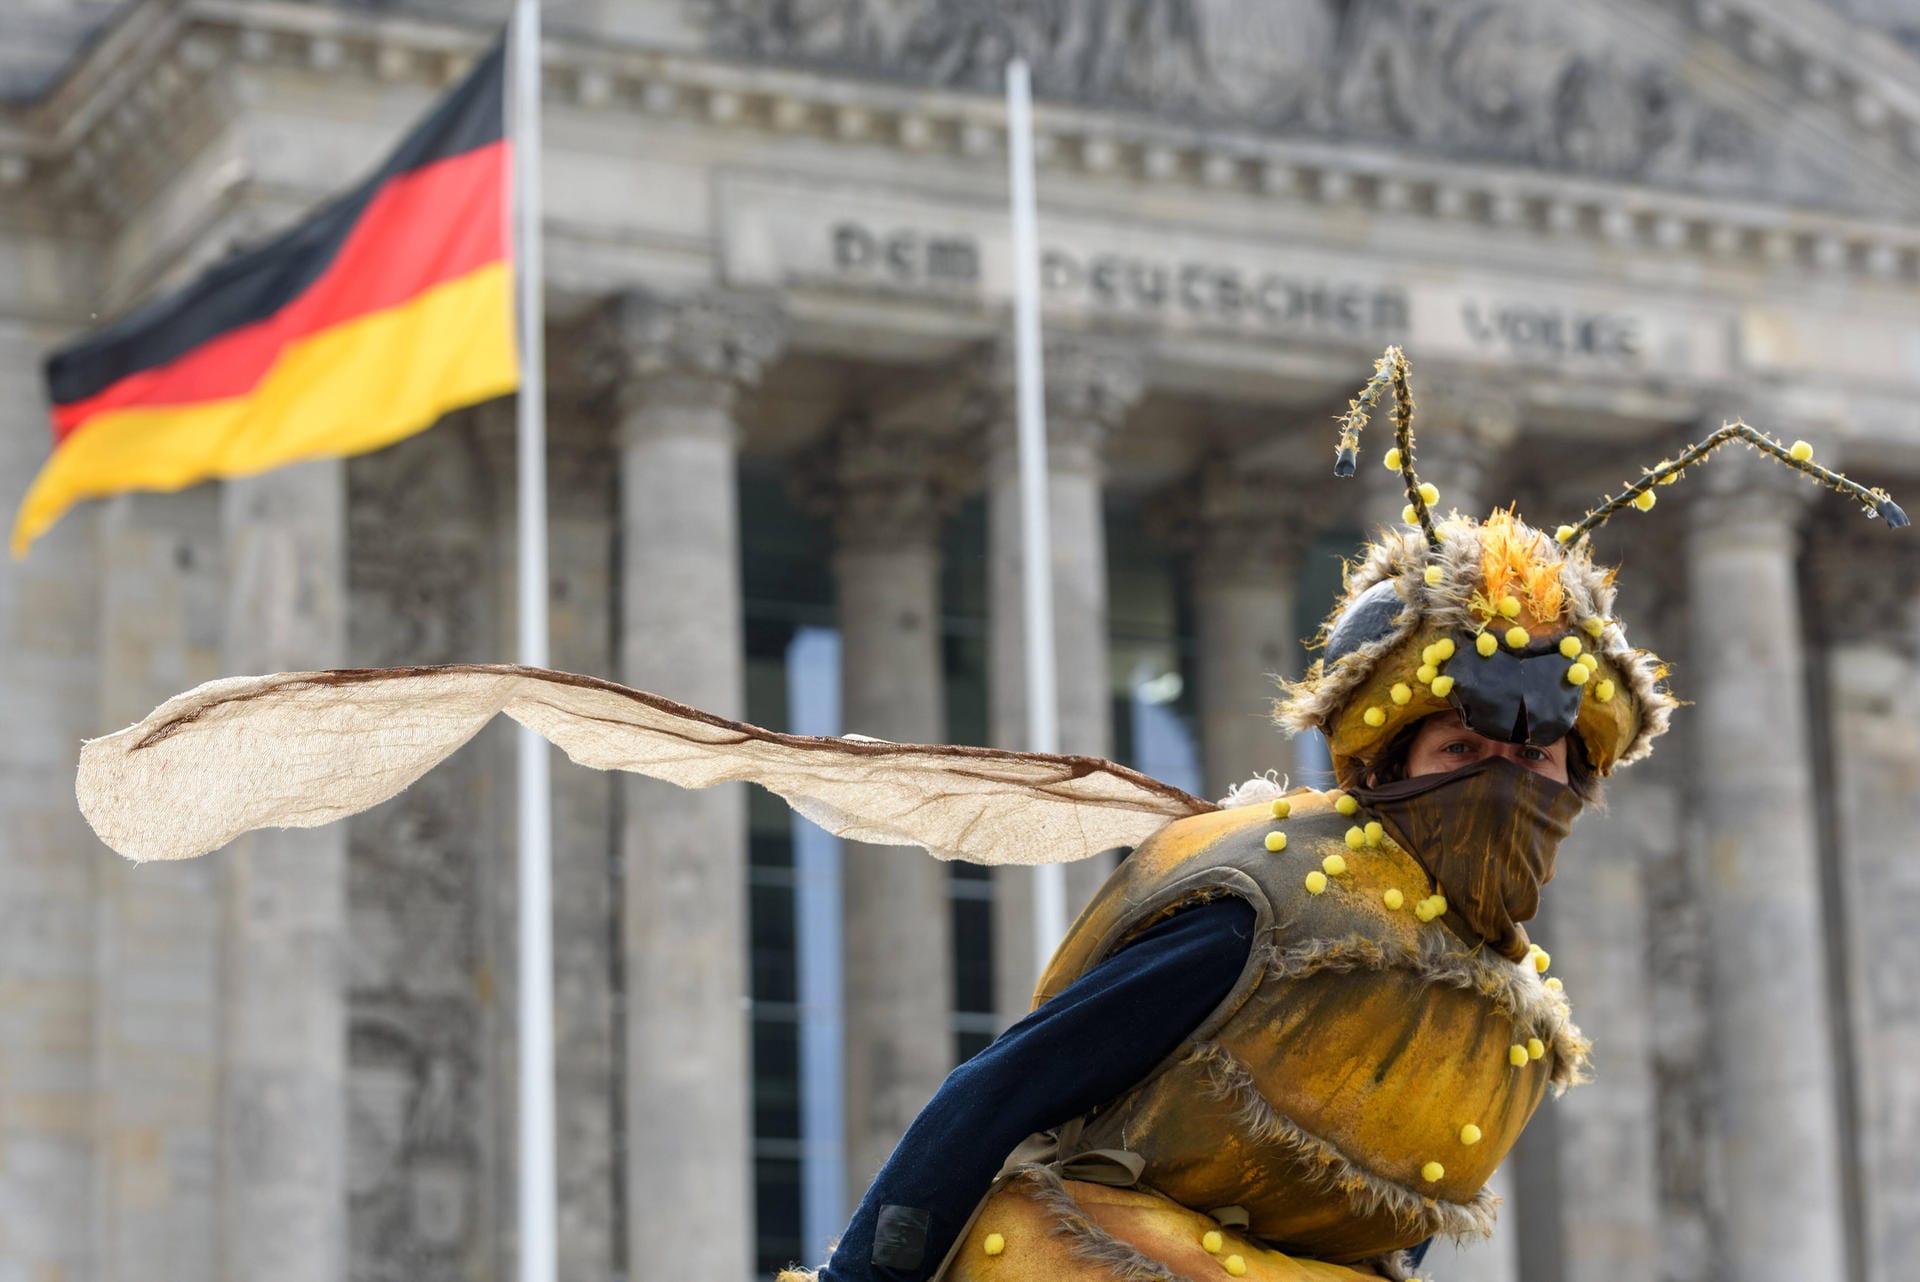 Kein anderes Insekt ist der Politik so wichtig wie die Biene. Markus Söder, Svenja Schulze und viele andere bewegt das, was auch für Kanzlerin Angela Merkel "ein großes Thema ist": der Schutz der Bienen und ihrer Lebensräume. Von Patenschaften bis "Bienen-Highways" – das tun deutsche Politiker für die bedrohten Tiere.